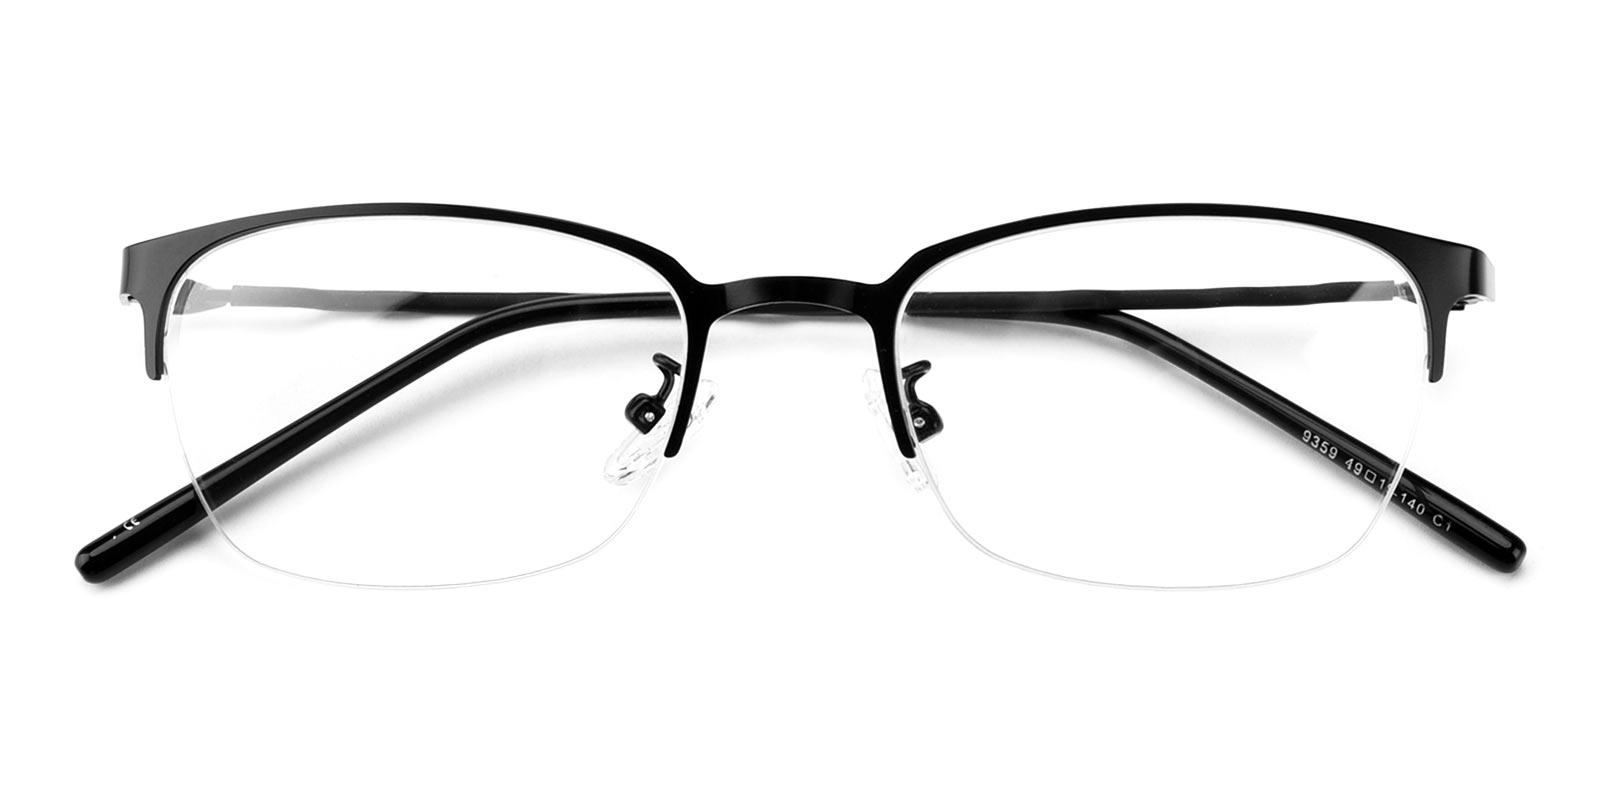 Lassiter Black Metal Eyeglasses , NosePads Frames from ABBE Glasses